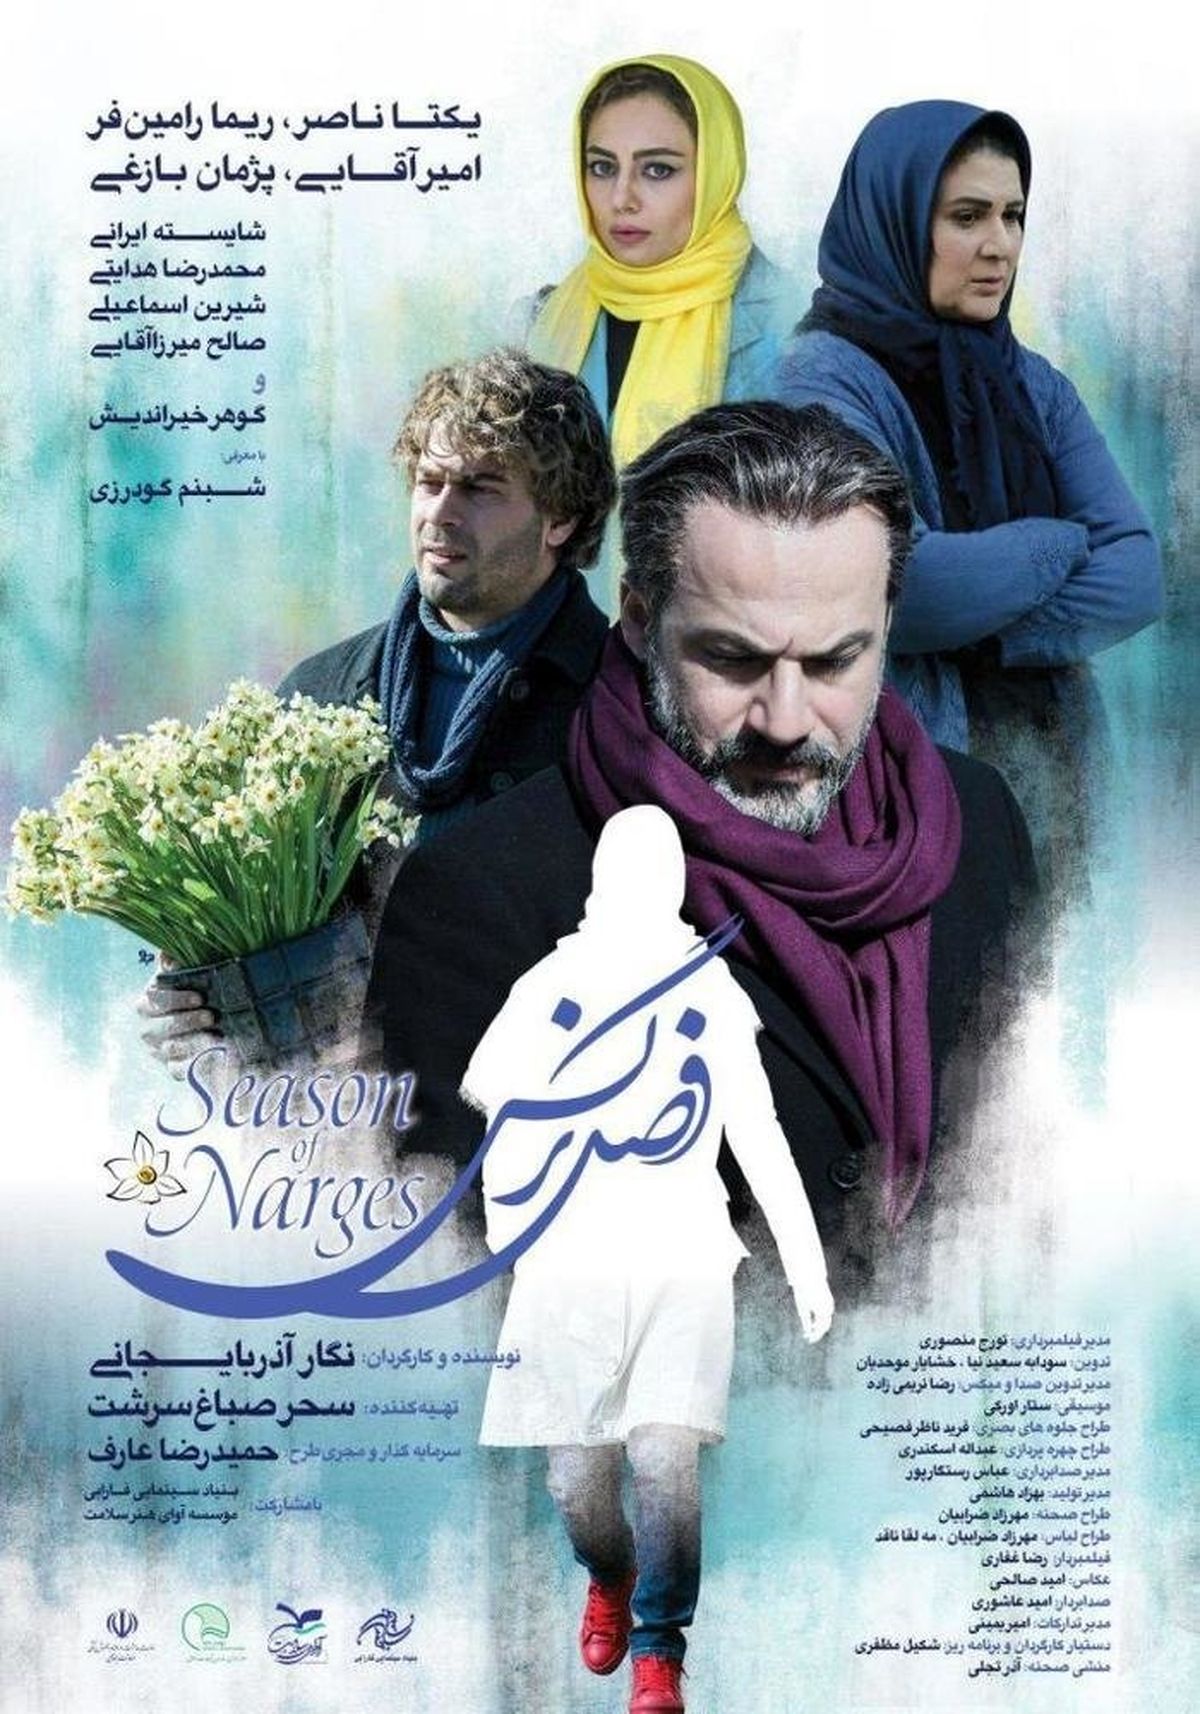 اکران «فصل نرگس» در پردیس سینمایی چهارباغ